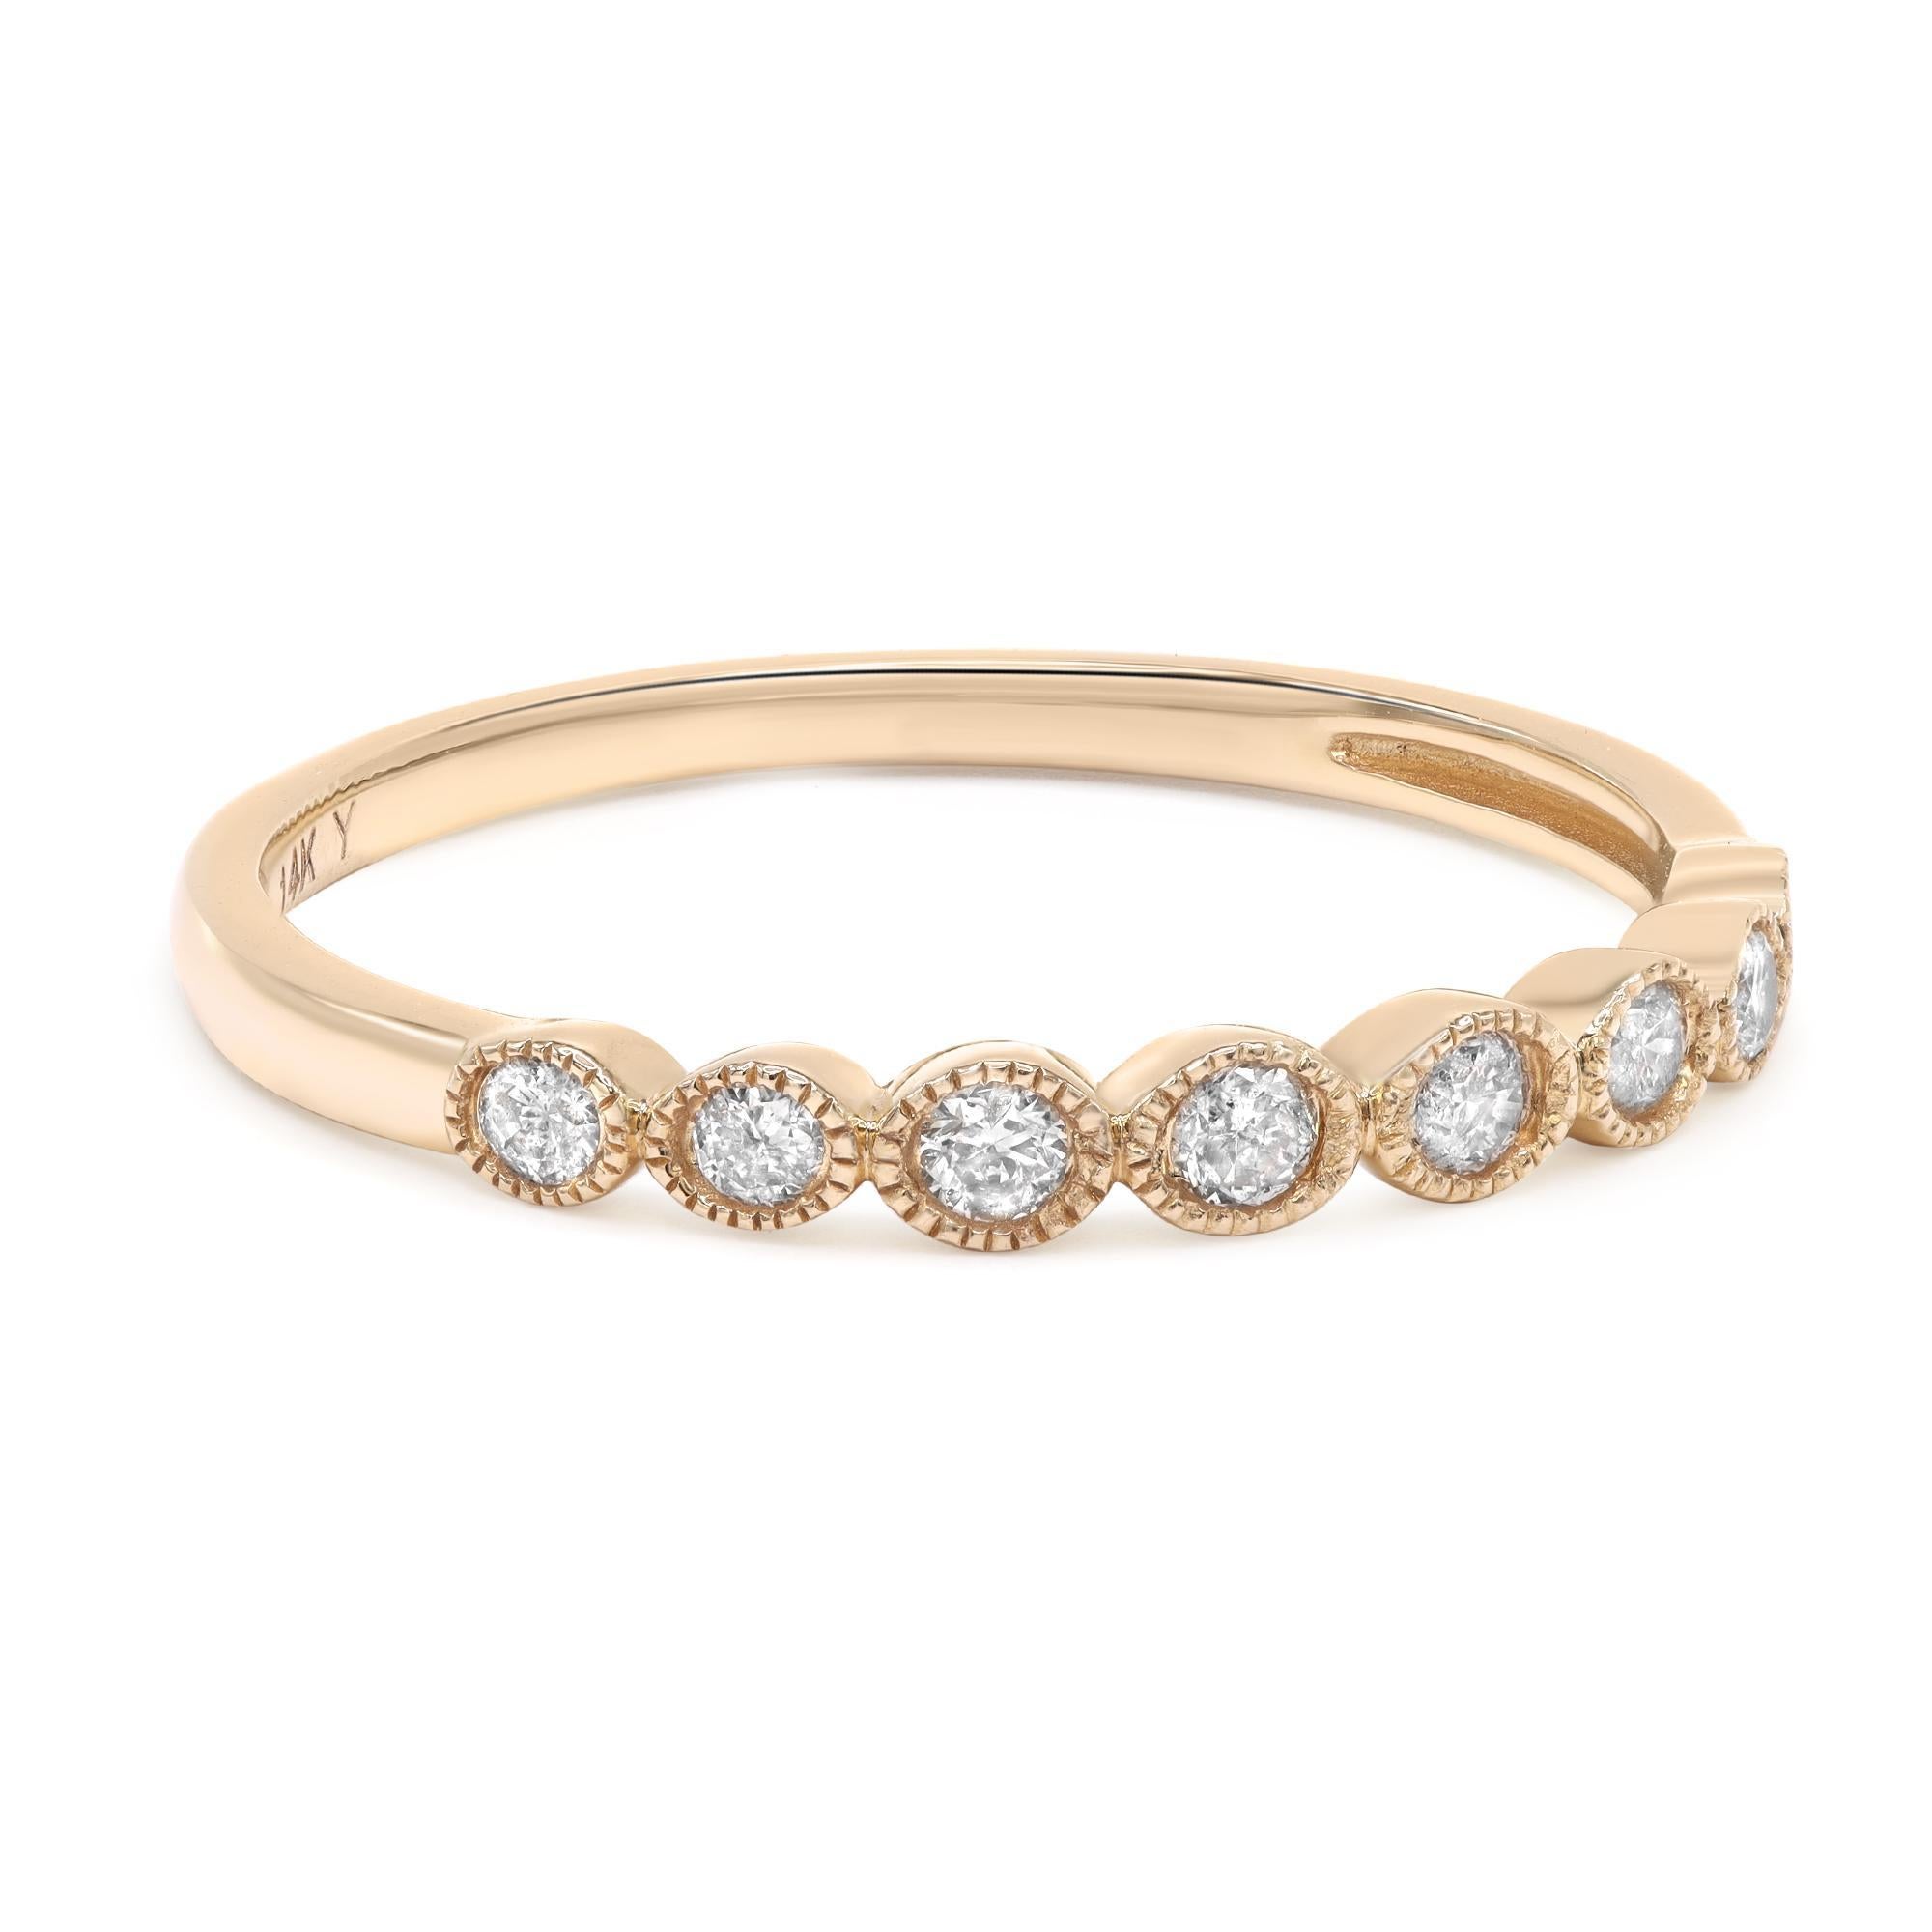 Dieser schöne Ring mit rundem Diamanten in Pflastersteinfassung passt perfekt zu jedem Anlass. Der aus 14-karätigem Gelbgold gefertigte Anhänger ist stapelbar und lässt sich leicht kombinieren. Das Gesamtgewicht der Diamanten beträgt 0,187cts. Ring